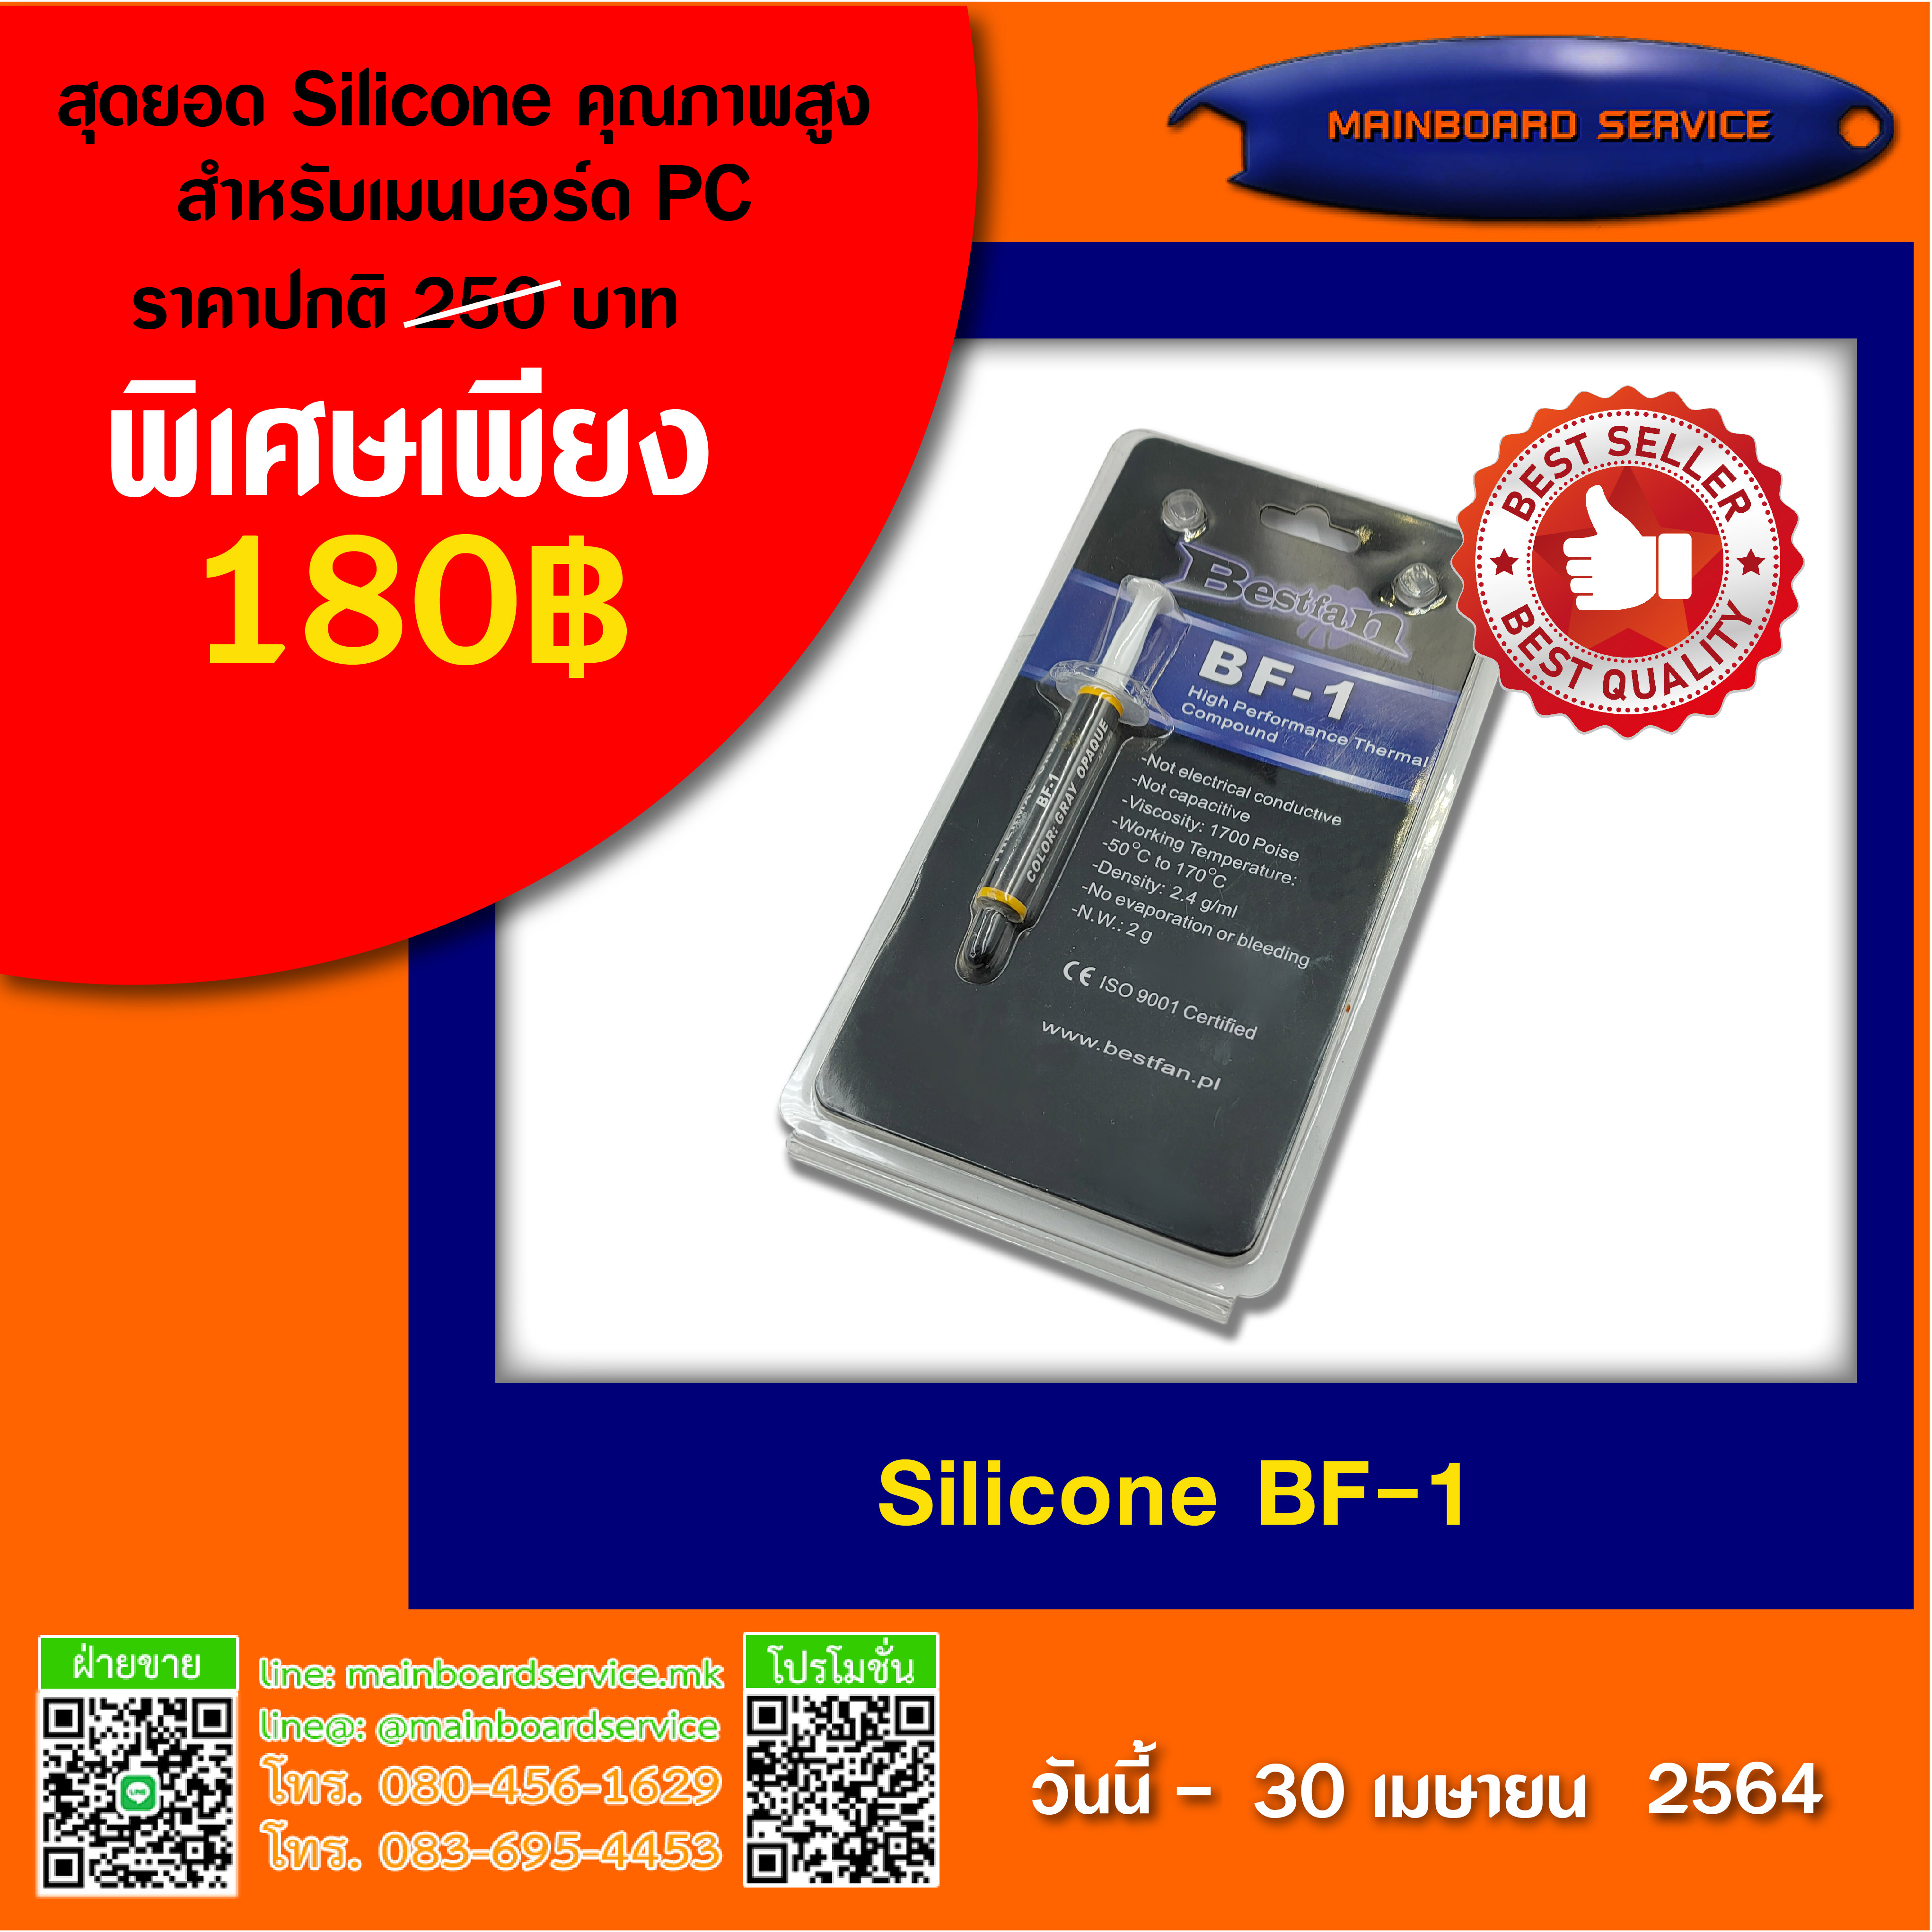 Silicone BF-1<br>สุดยอด Silicone คุณภาพสูงสำหรับเมนบอร์ด PC